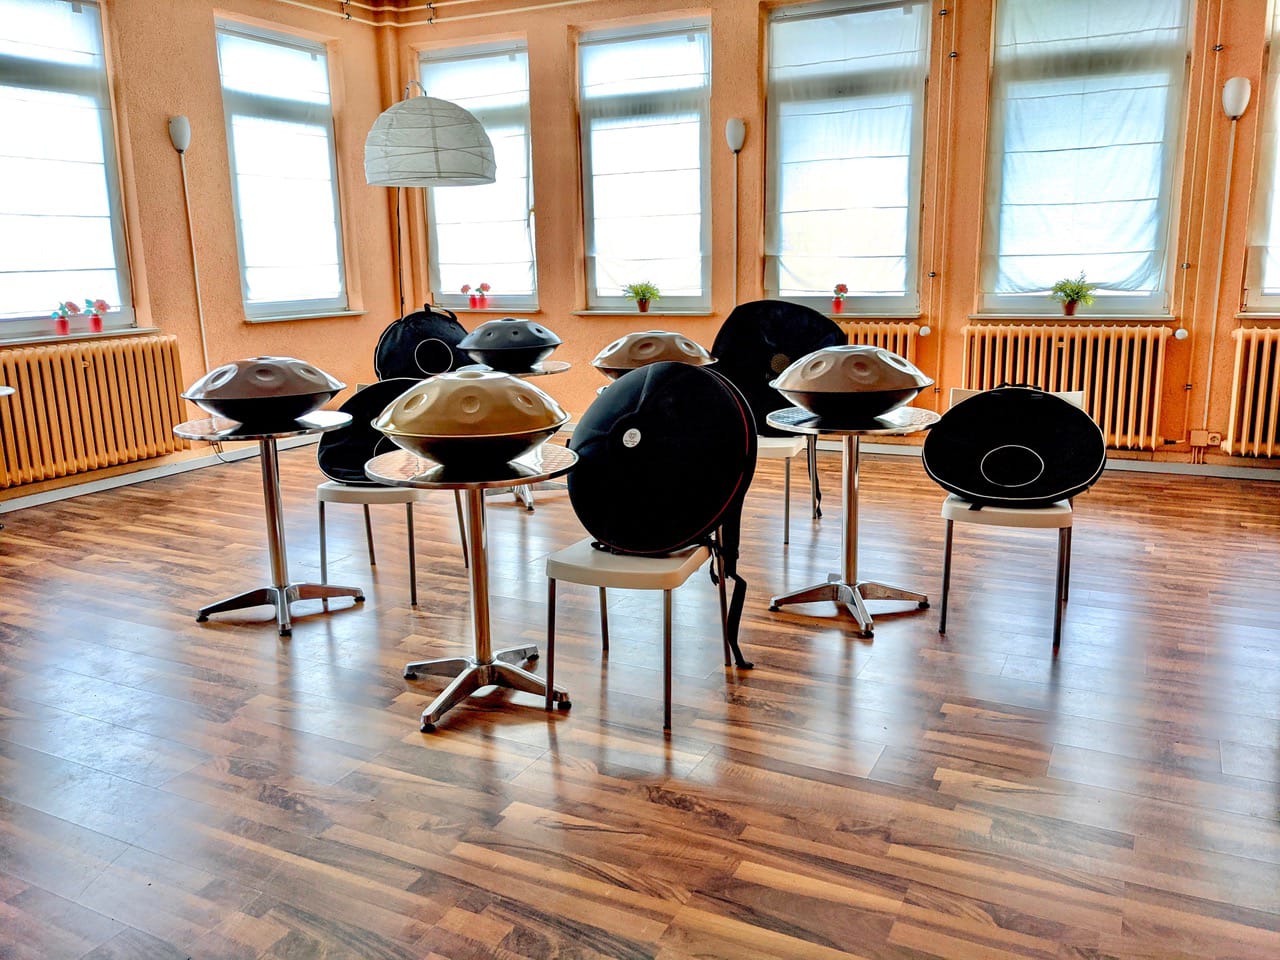 Mehrere edelstahl Handpans stehen auf kleinen runden Tischen im lichtdurchflutetem Ludwigstheather in Aschaffenburg